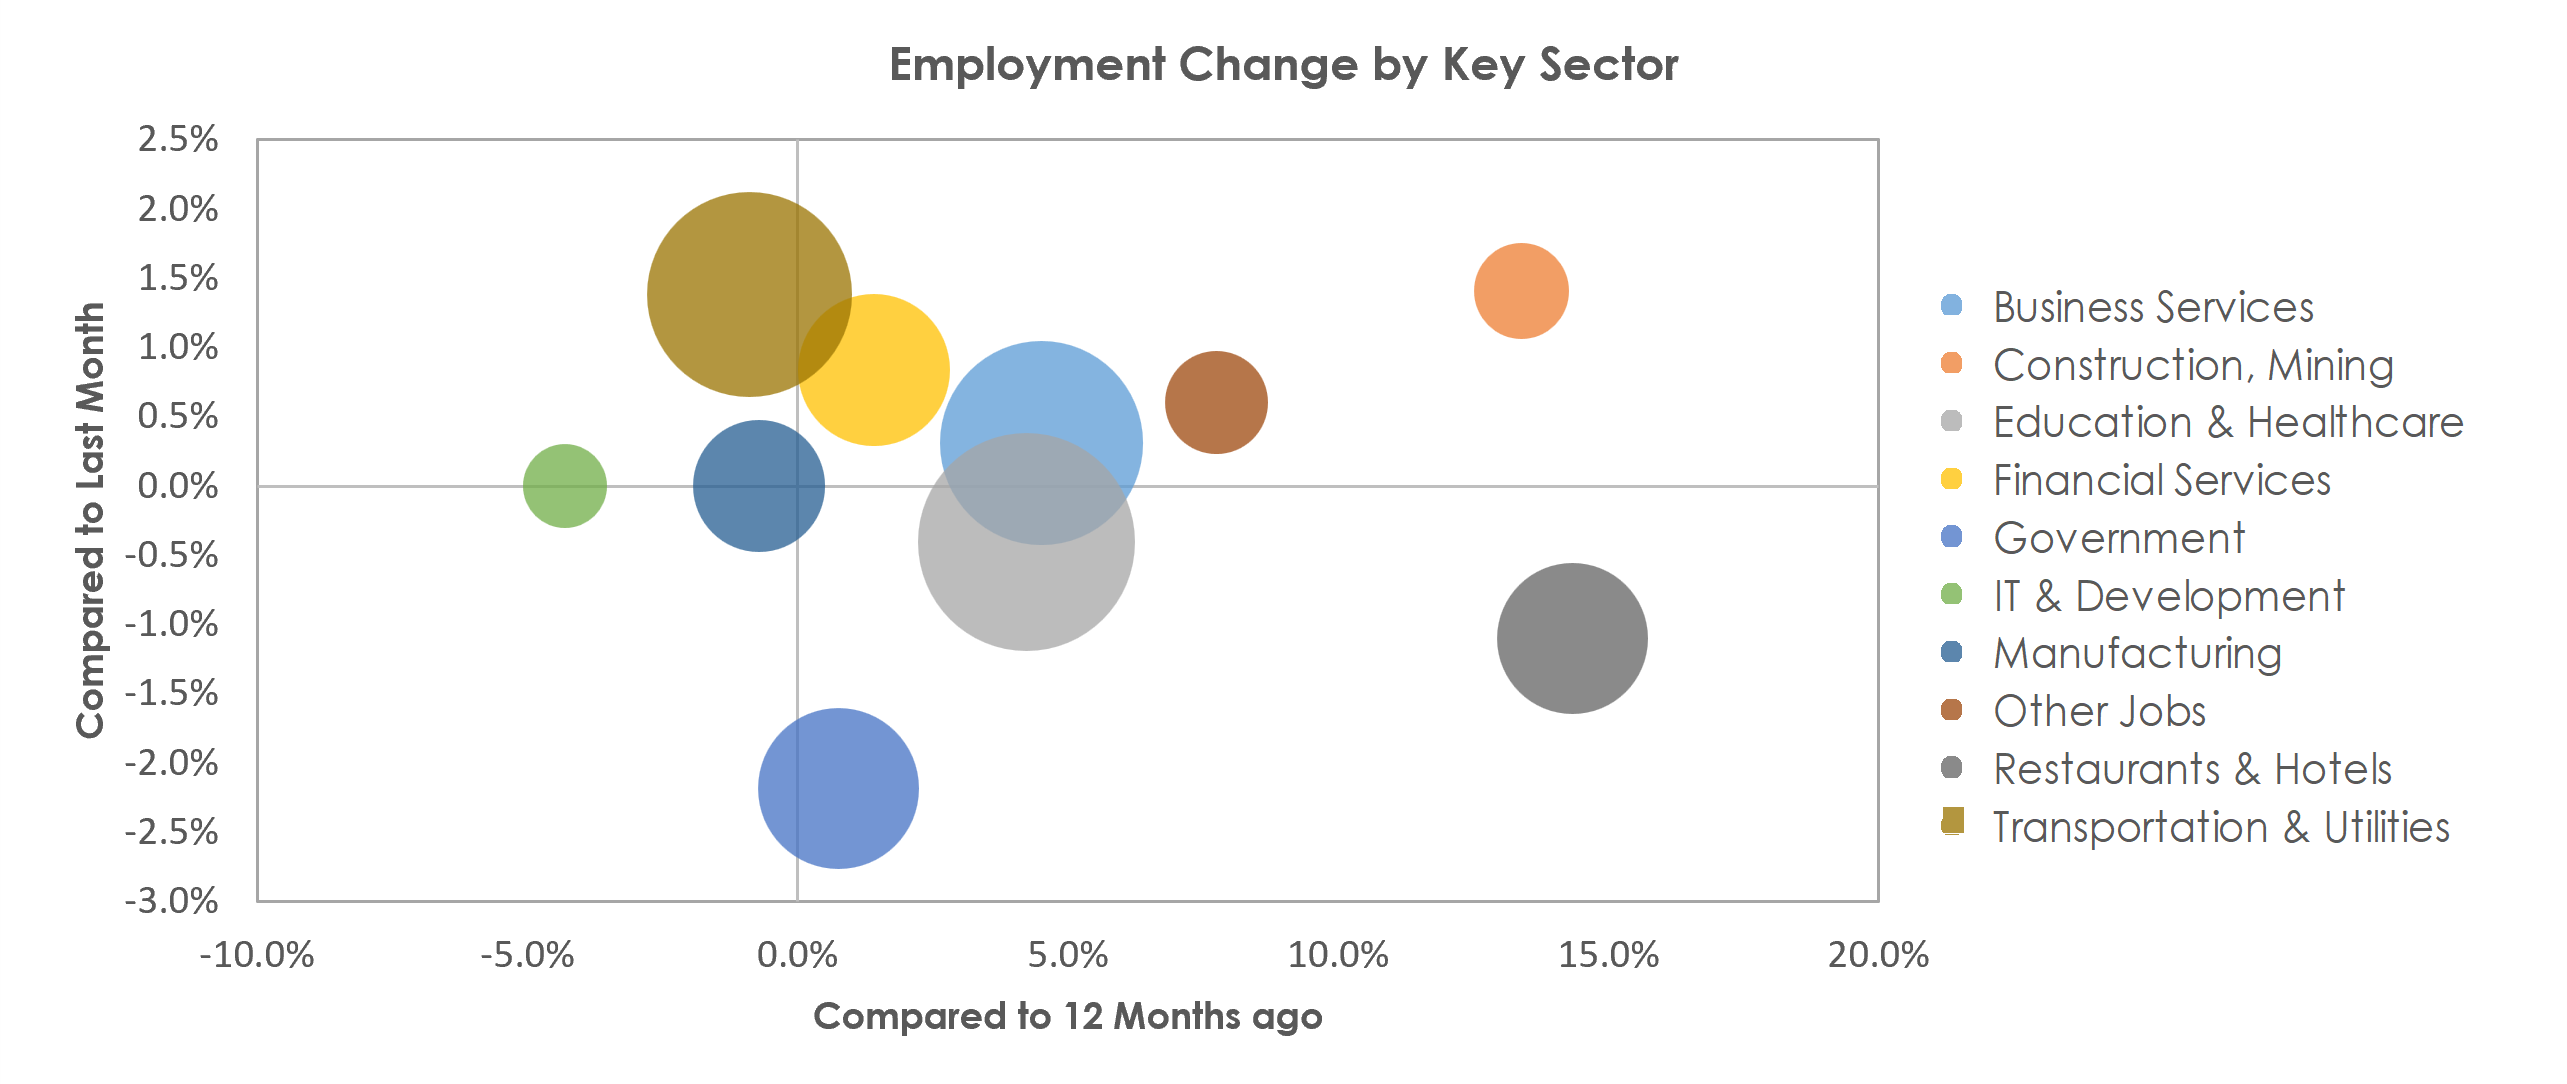 Bridgeport-Stamford-Norwalk, CT Unemployment by Industry December 2021